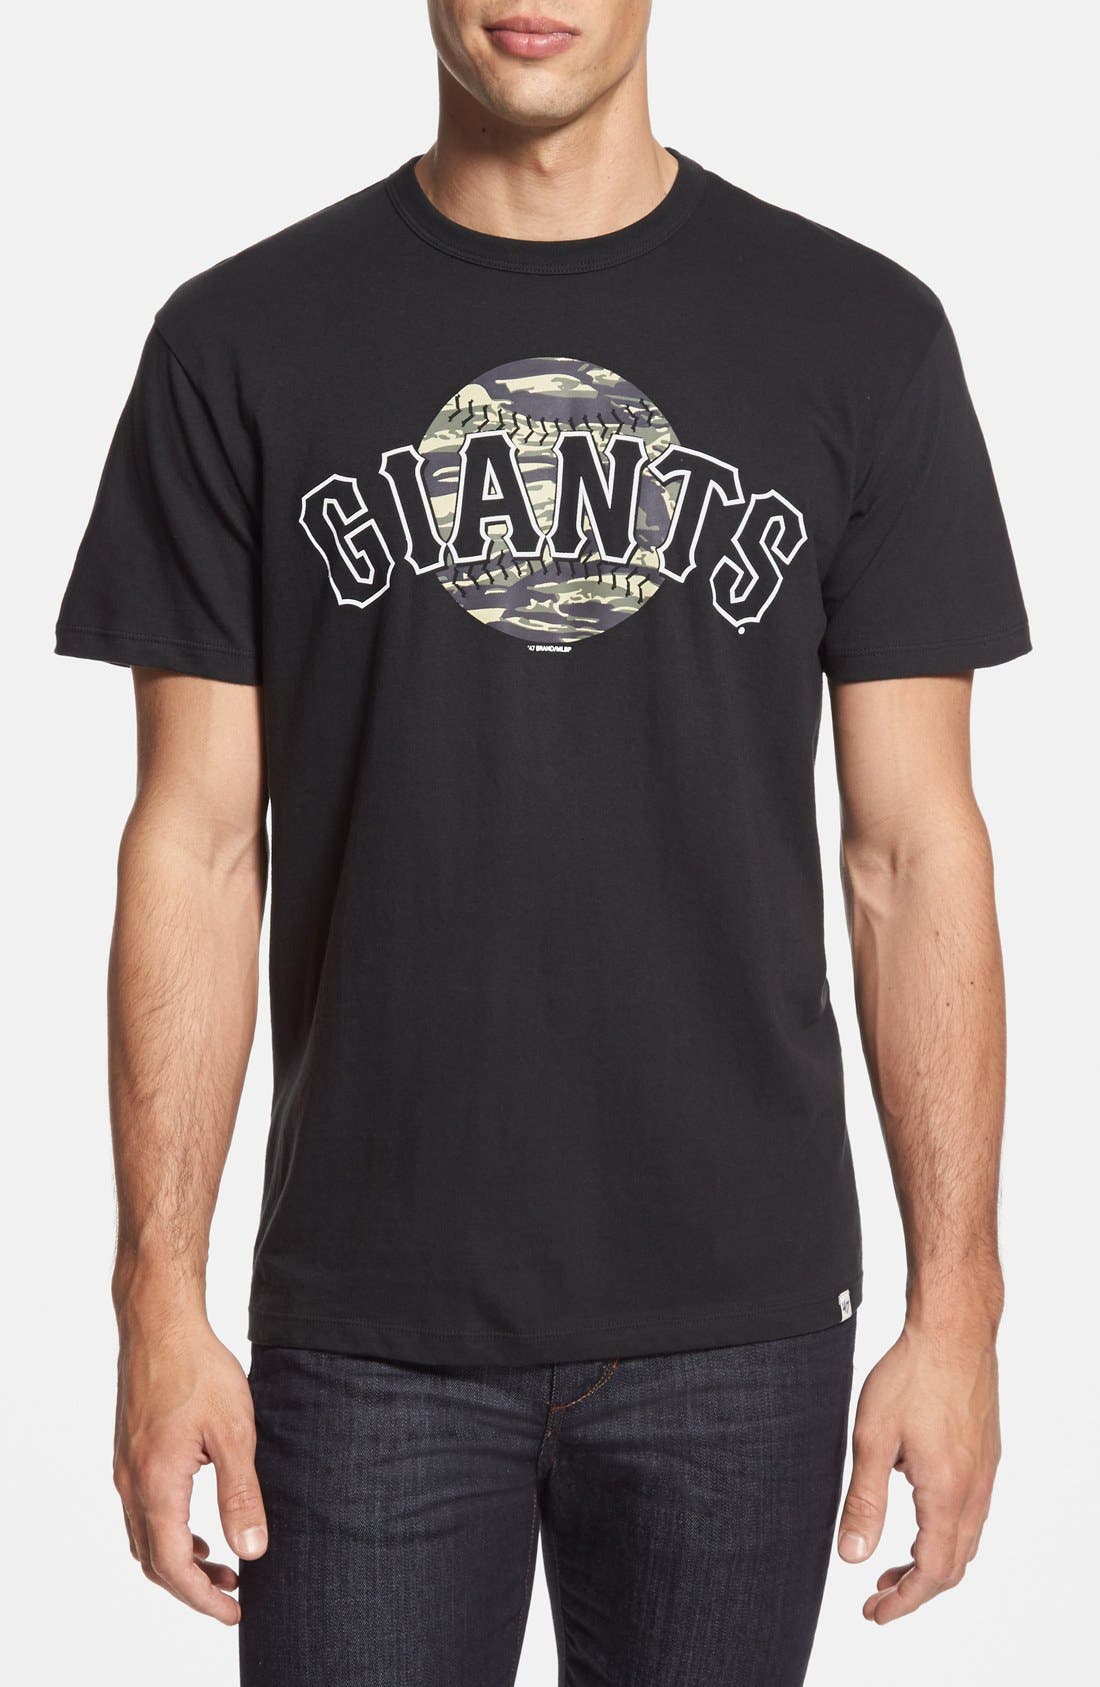 sf giants camo shirt